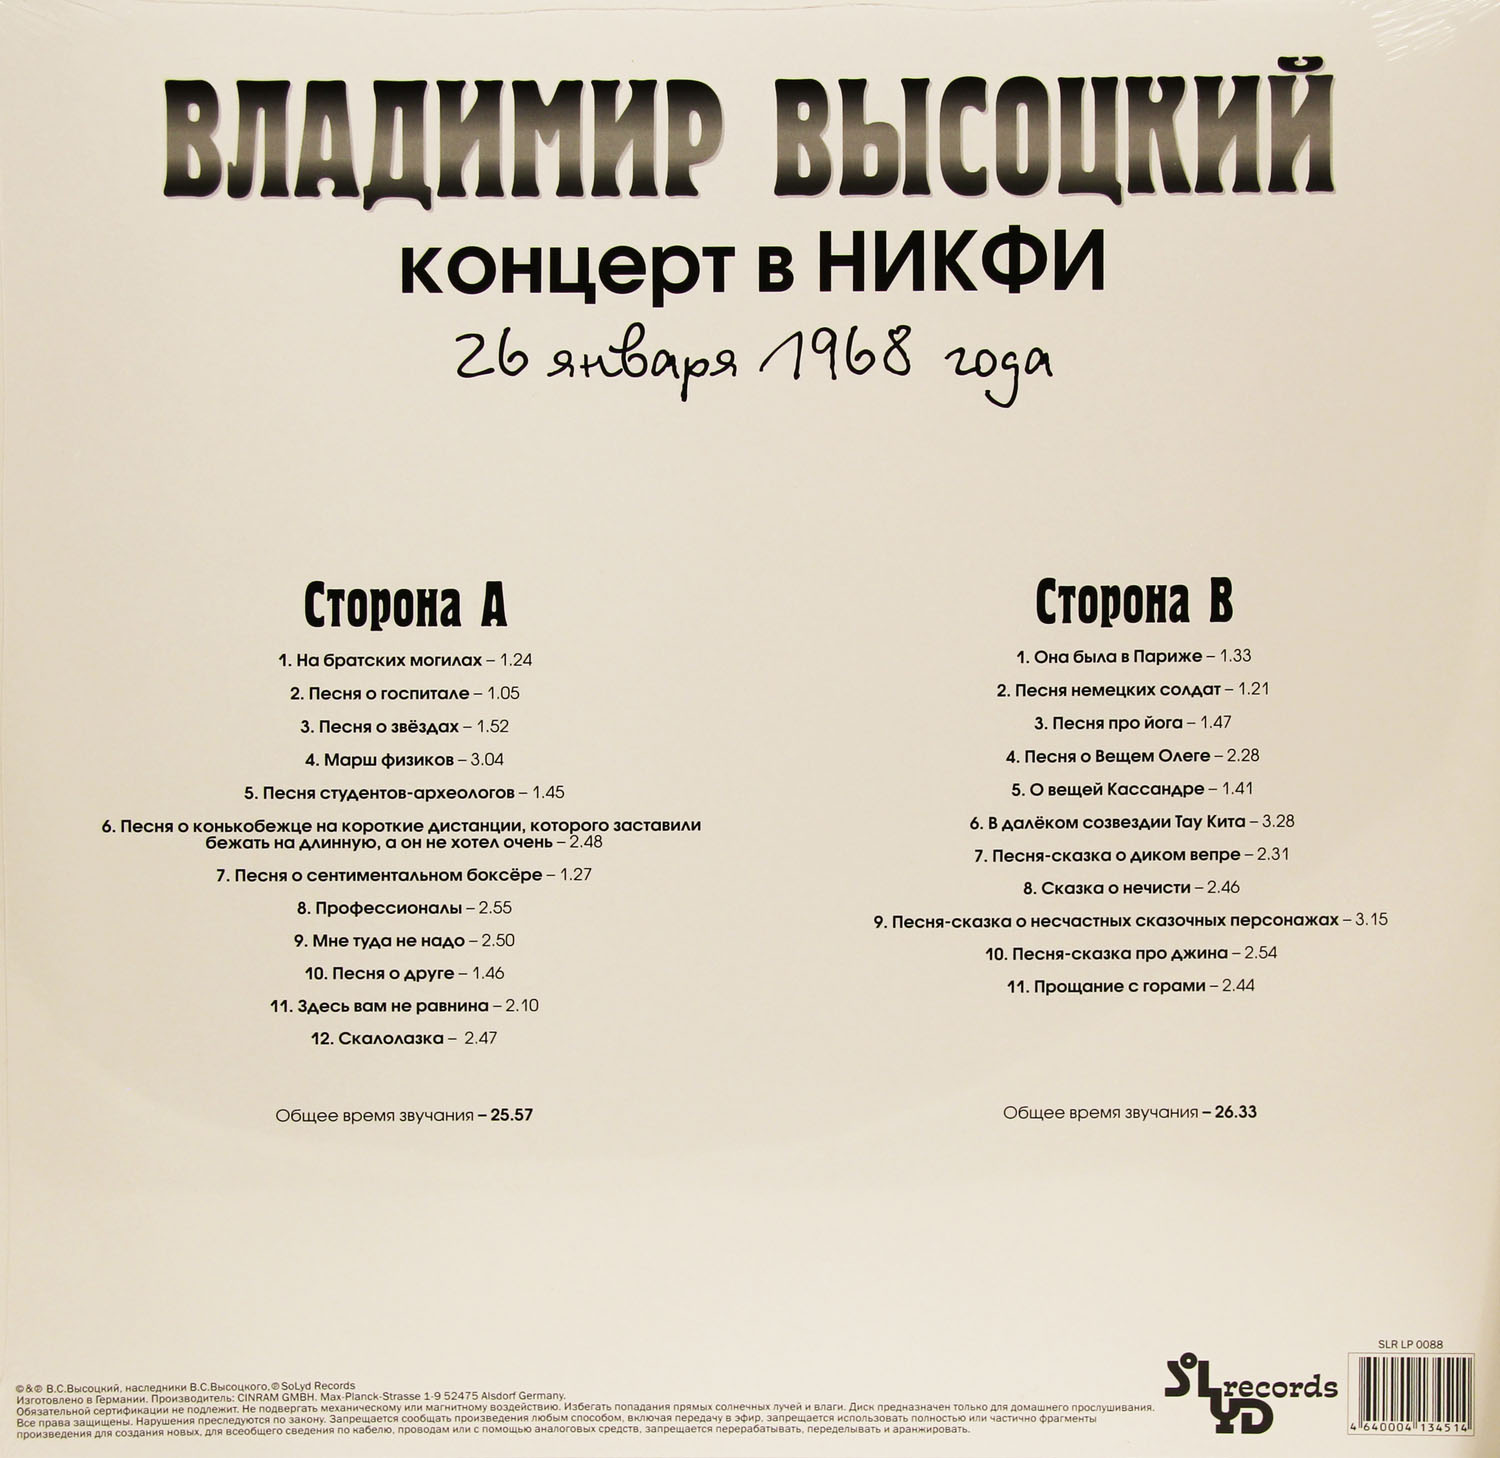 Владимир Высоцкий - Концерт в НИКФИ (SLR LP 0088)